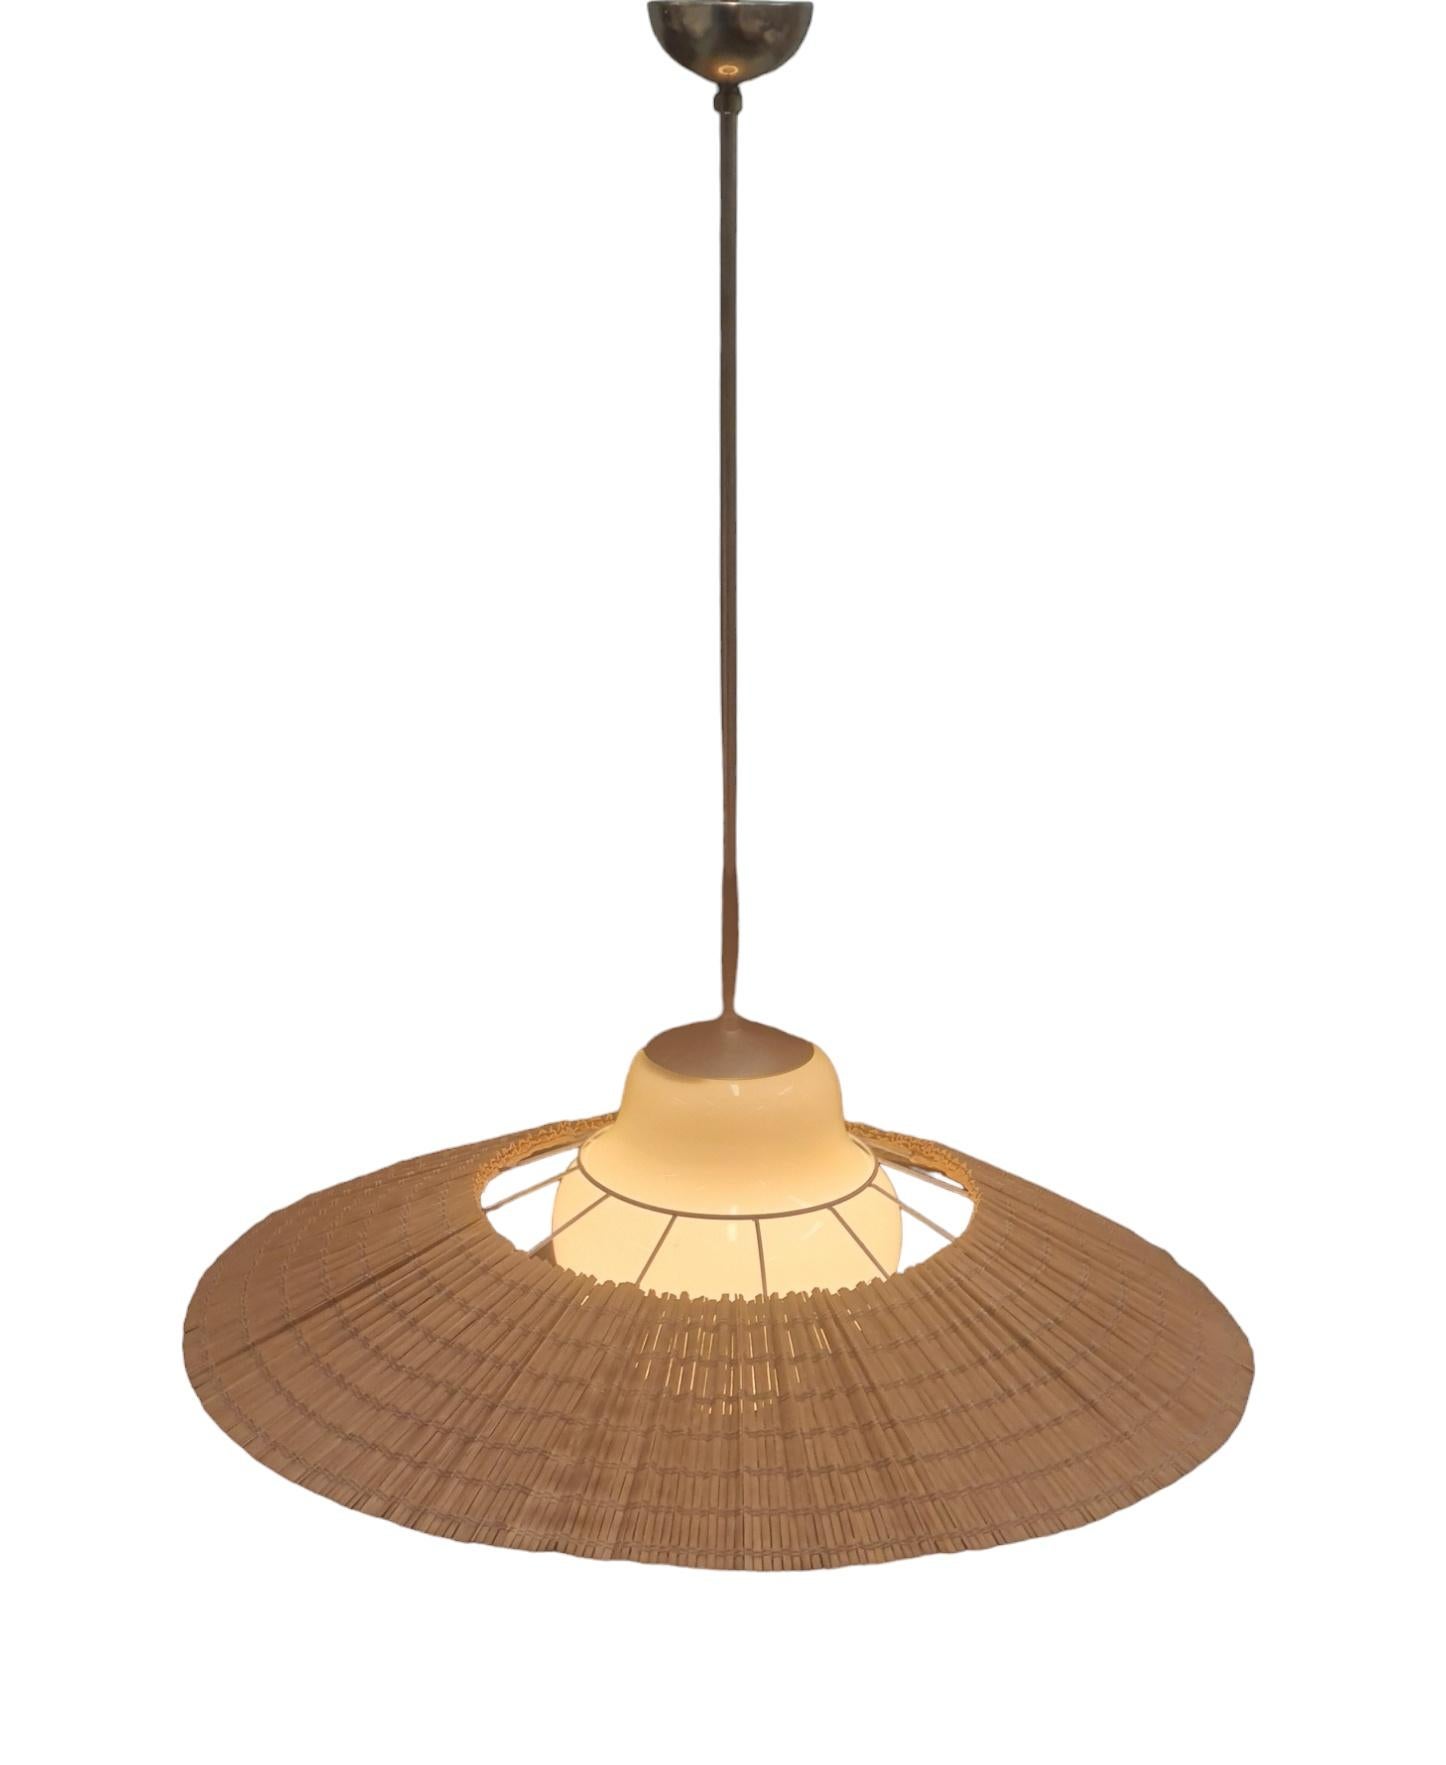 Lisa Johansson-Papé Ceiling Lamp model 1088, Orno 9